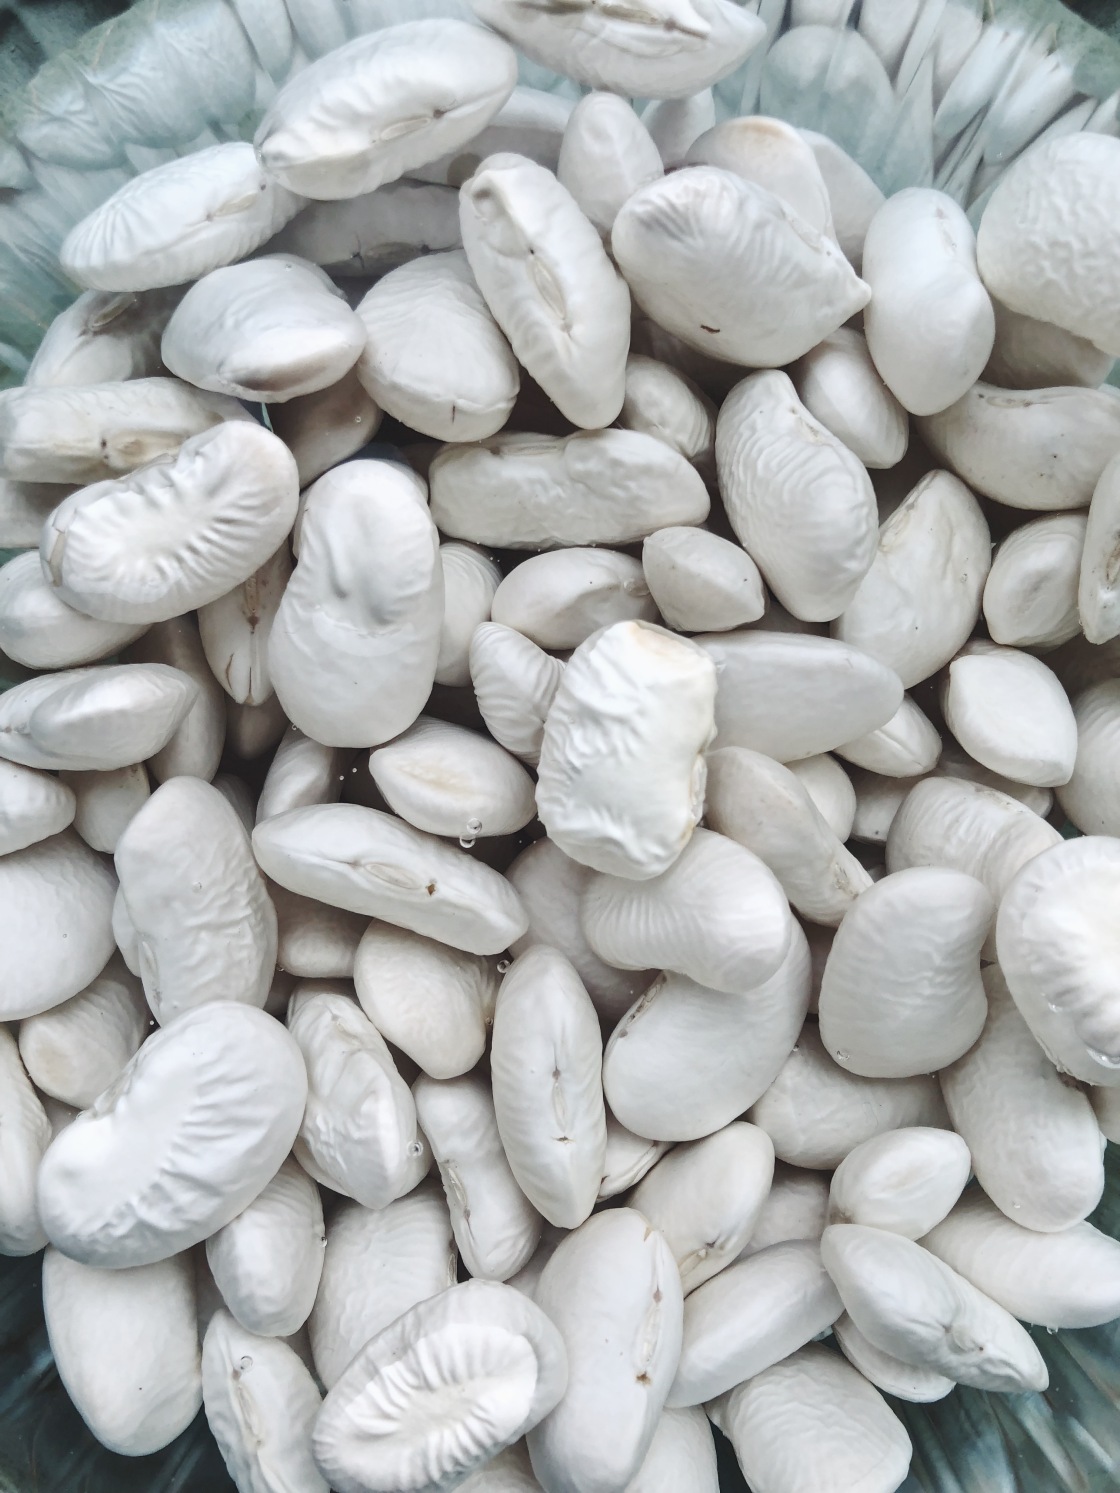 Giant white beans zero waste